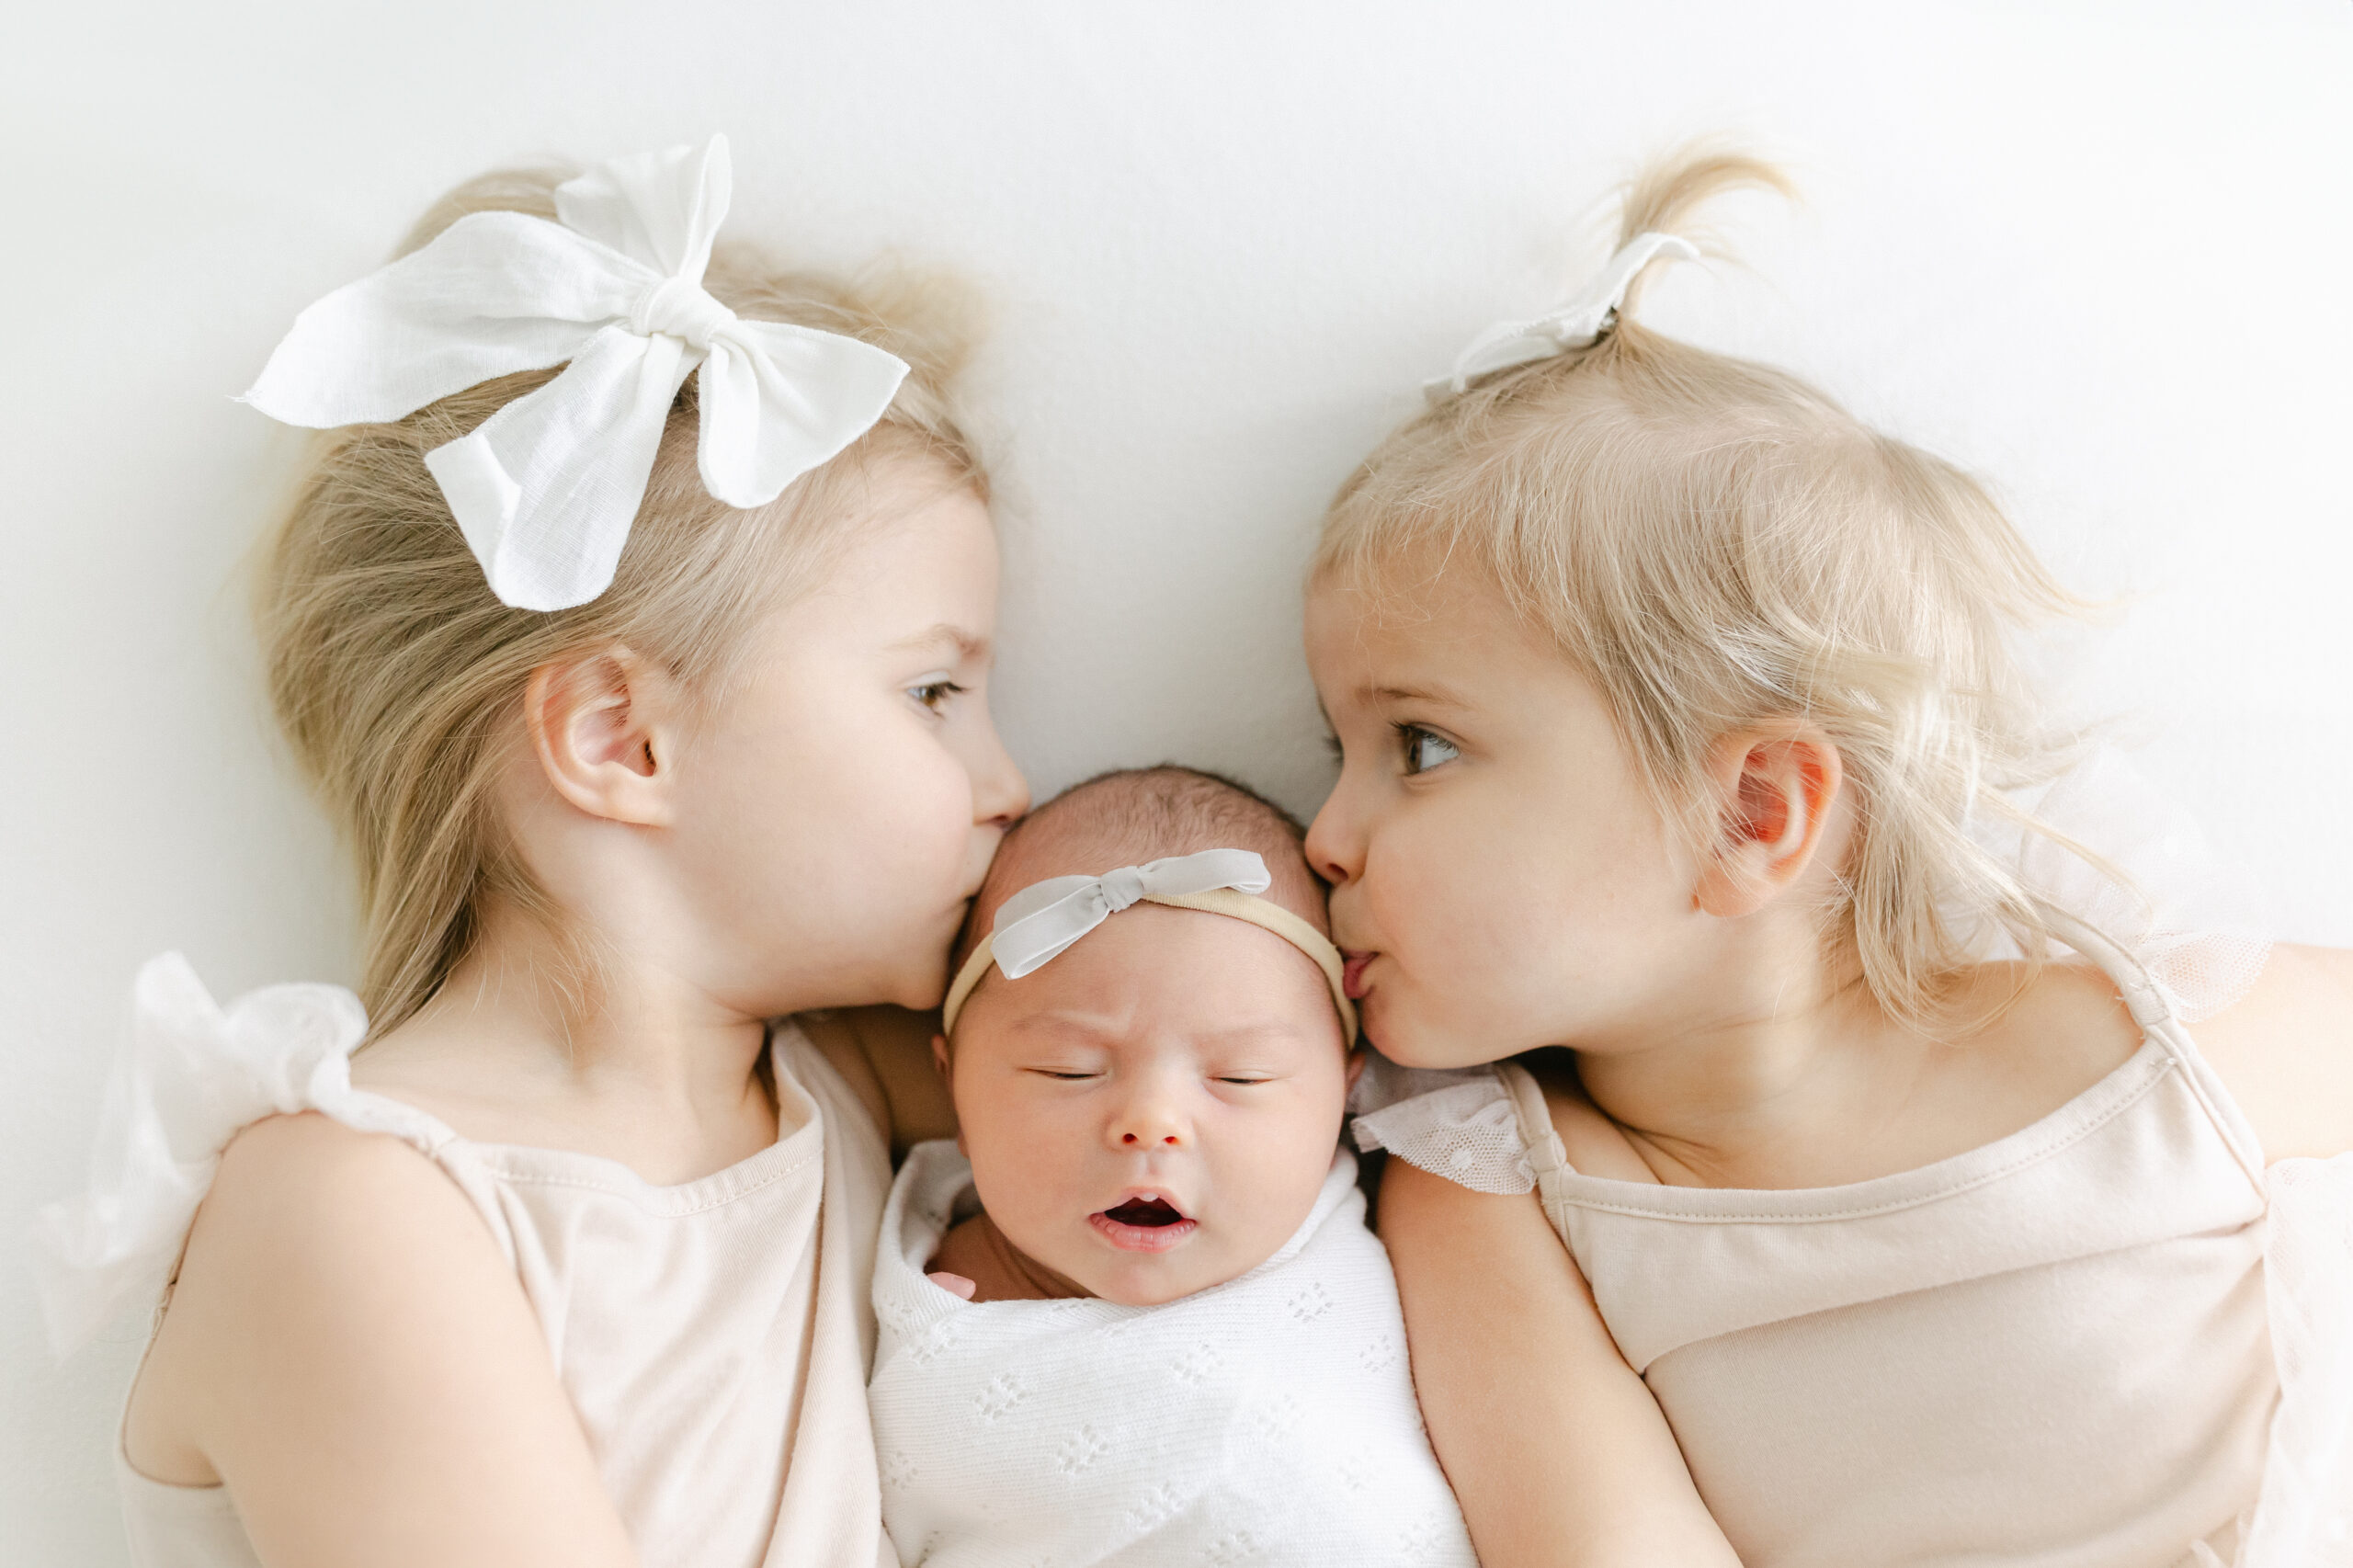 Newborn Photo with 3 kids